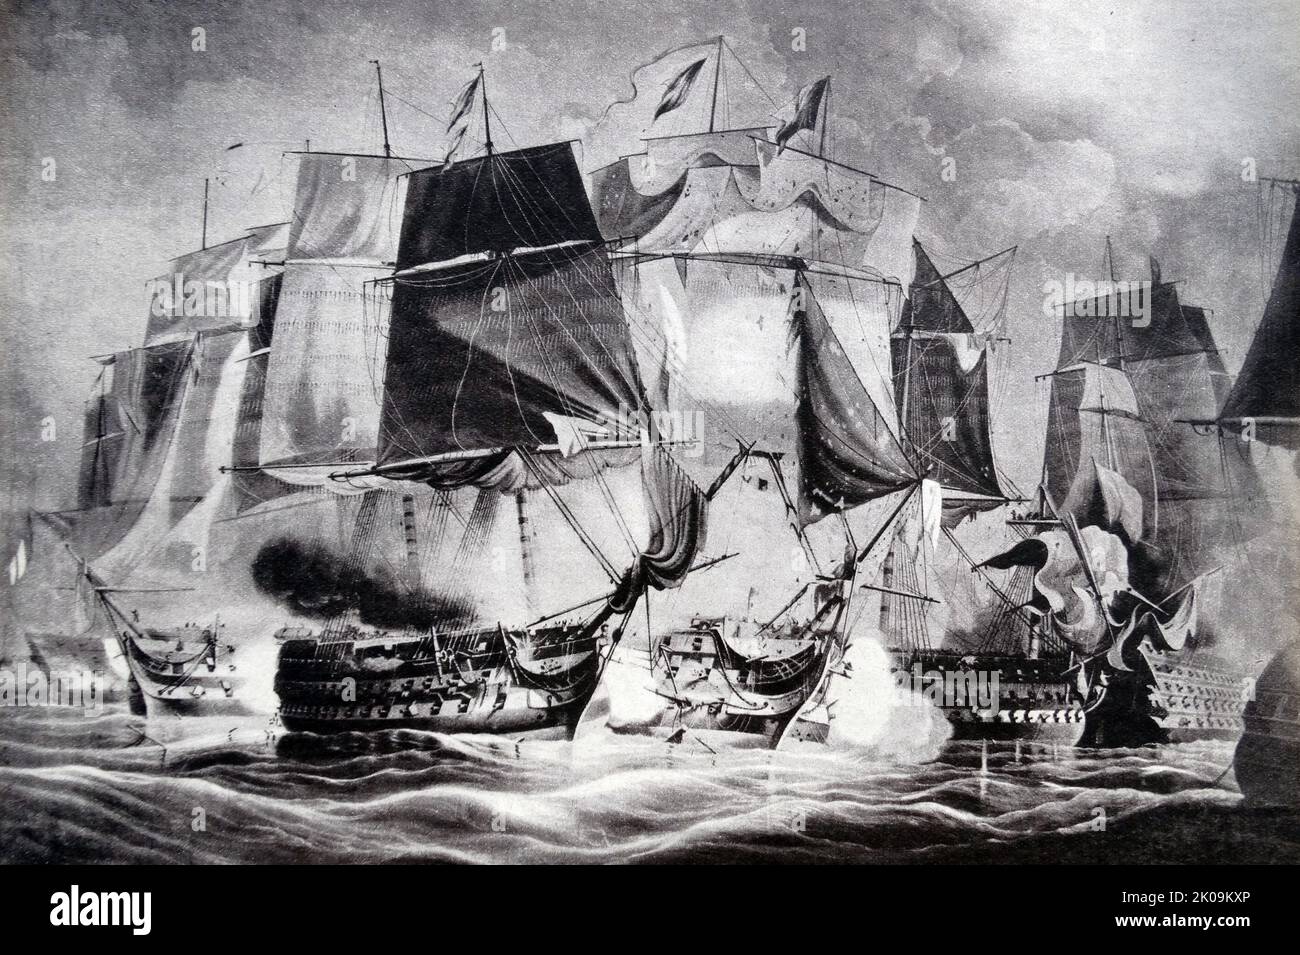 Die Schlacht von Trafalgar (21. Oktober 1805) war ein Seeeinsatz zwischen der britischen Royal Navy und den kombinierten Flotten der französischen und spanischen Marine während des Krieges der Dritten Koalition (August-Dezember 1805) der Napoleonischen Kriege (1803-1815). Zeichnung. Als Teil von Napoleons Plänen, England zu erobern, Vereinigten sich die französischen und spanischen Flotten, um die Kontrolle über den Ärmelkanal zu übernehmen, aber sie begegneten der britischen Flotte unter Admiral Lord Nelson. Die anschließende heftige Schlacht führte zu einem Verlust von 22 alliierten Schiffen, während die Briten keine verloren. Stockfoto